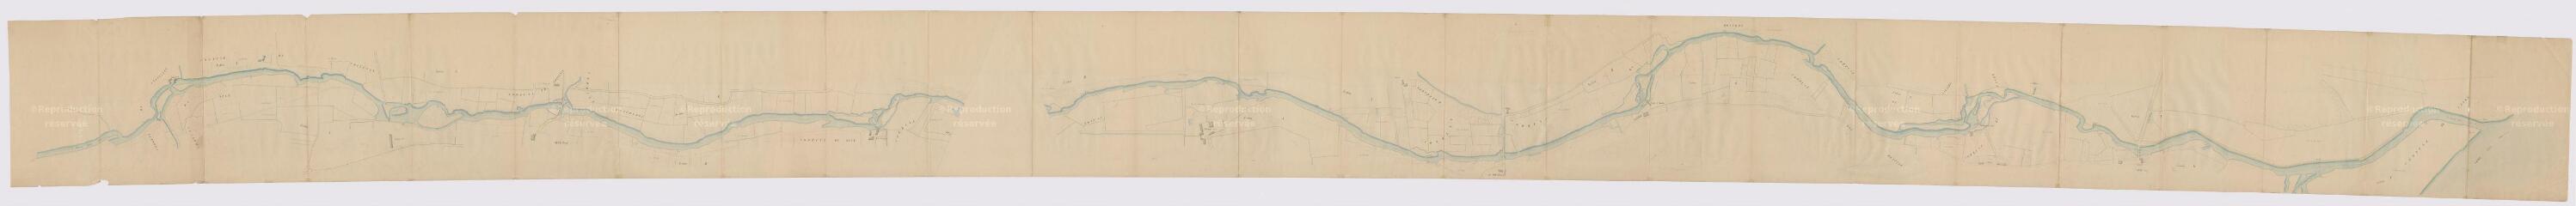 1 vue [Cellettes, Les Montils, Candé-sur-Beuvron : plan de la vallée du Beuvron, XIXe], plume et aquarelle.